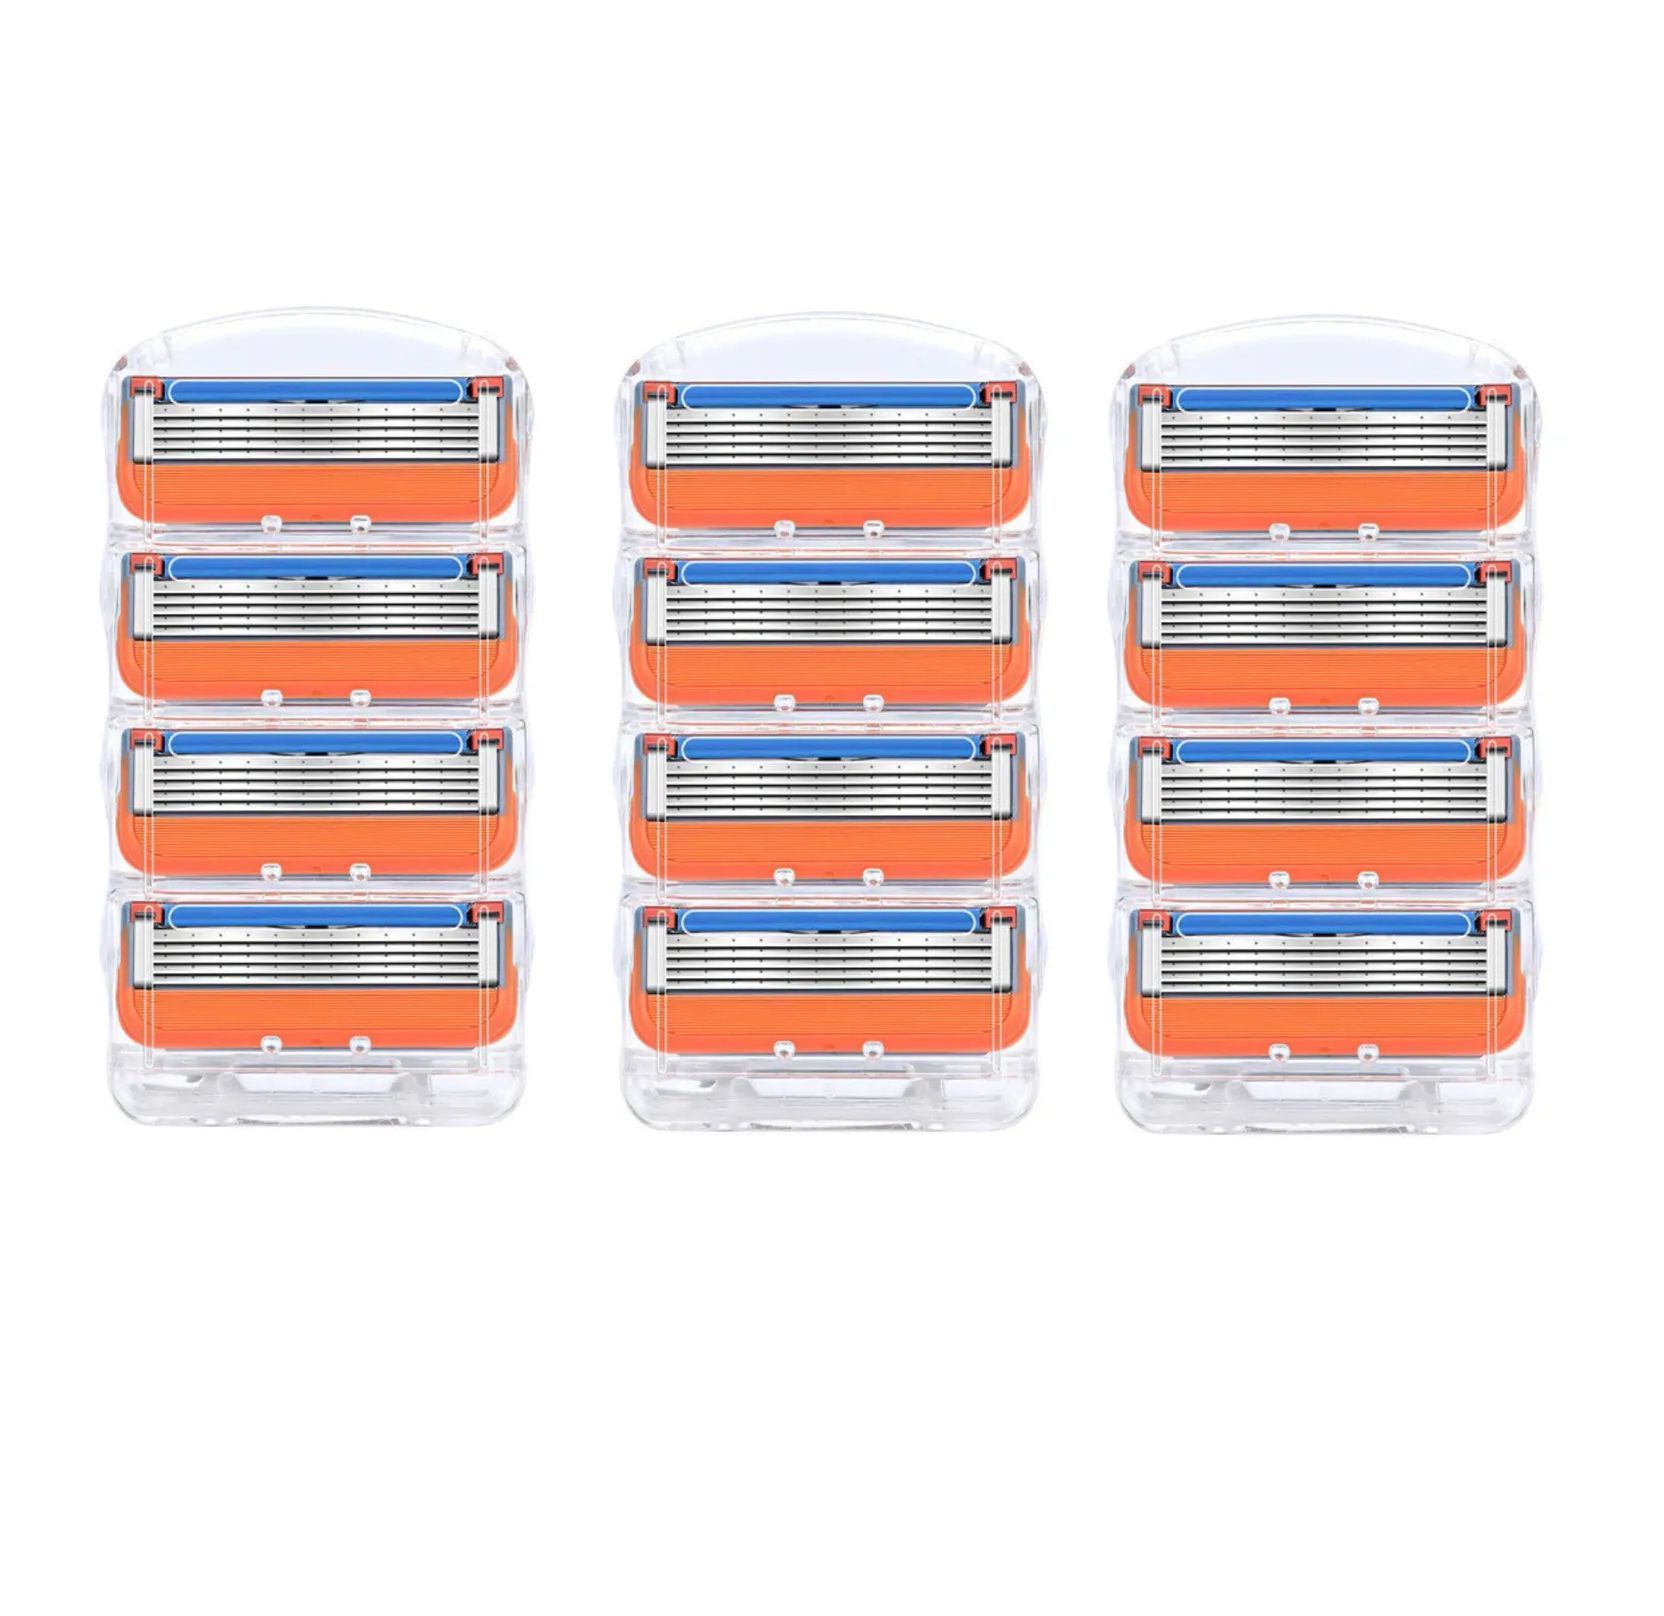 Озон кассеты для бритья. Сменные кассеты для бритья BIC две оранжевые полоски.